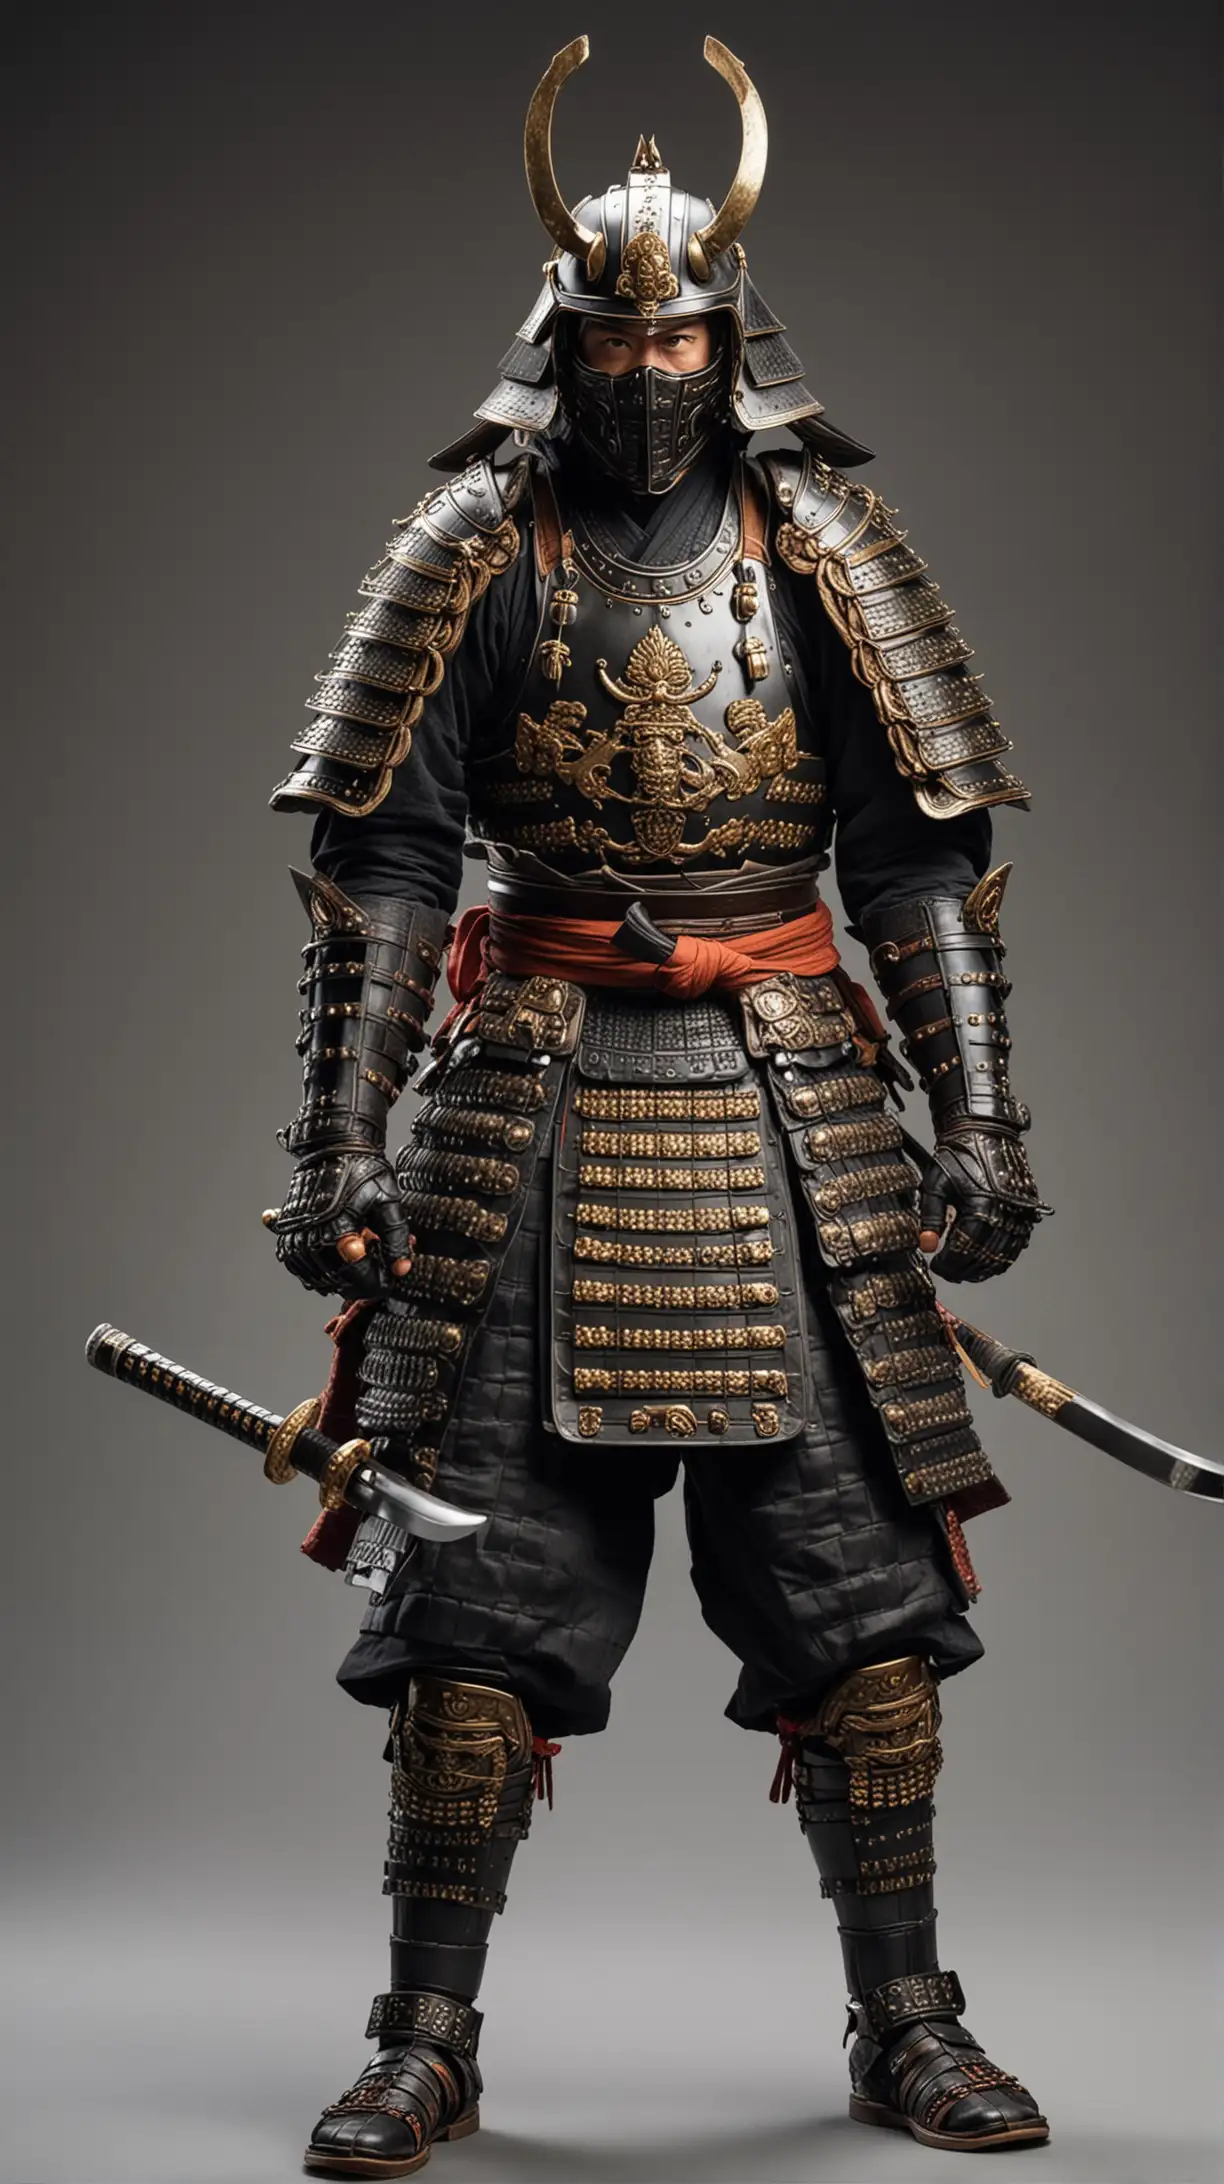 Samurai in Full Armor with Kabuto Helmet